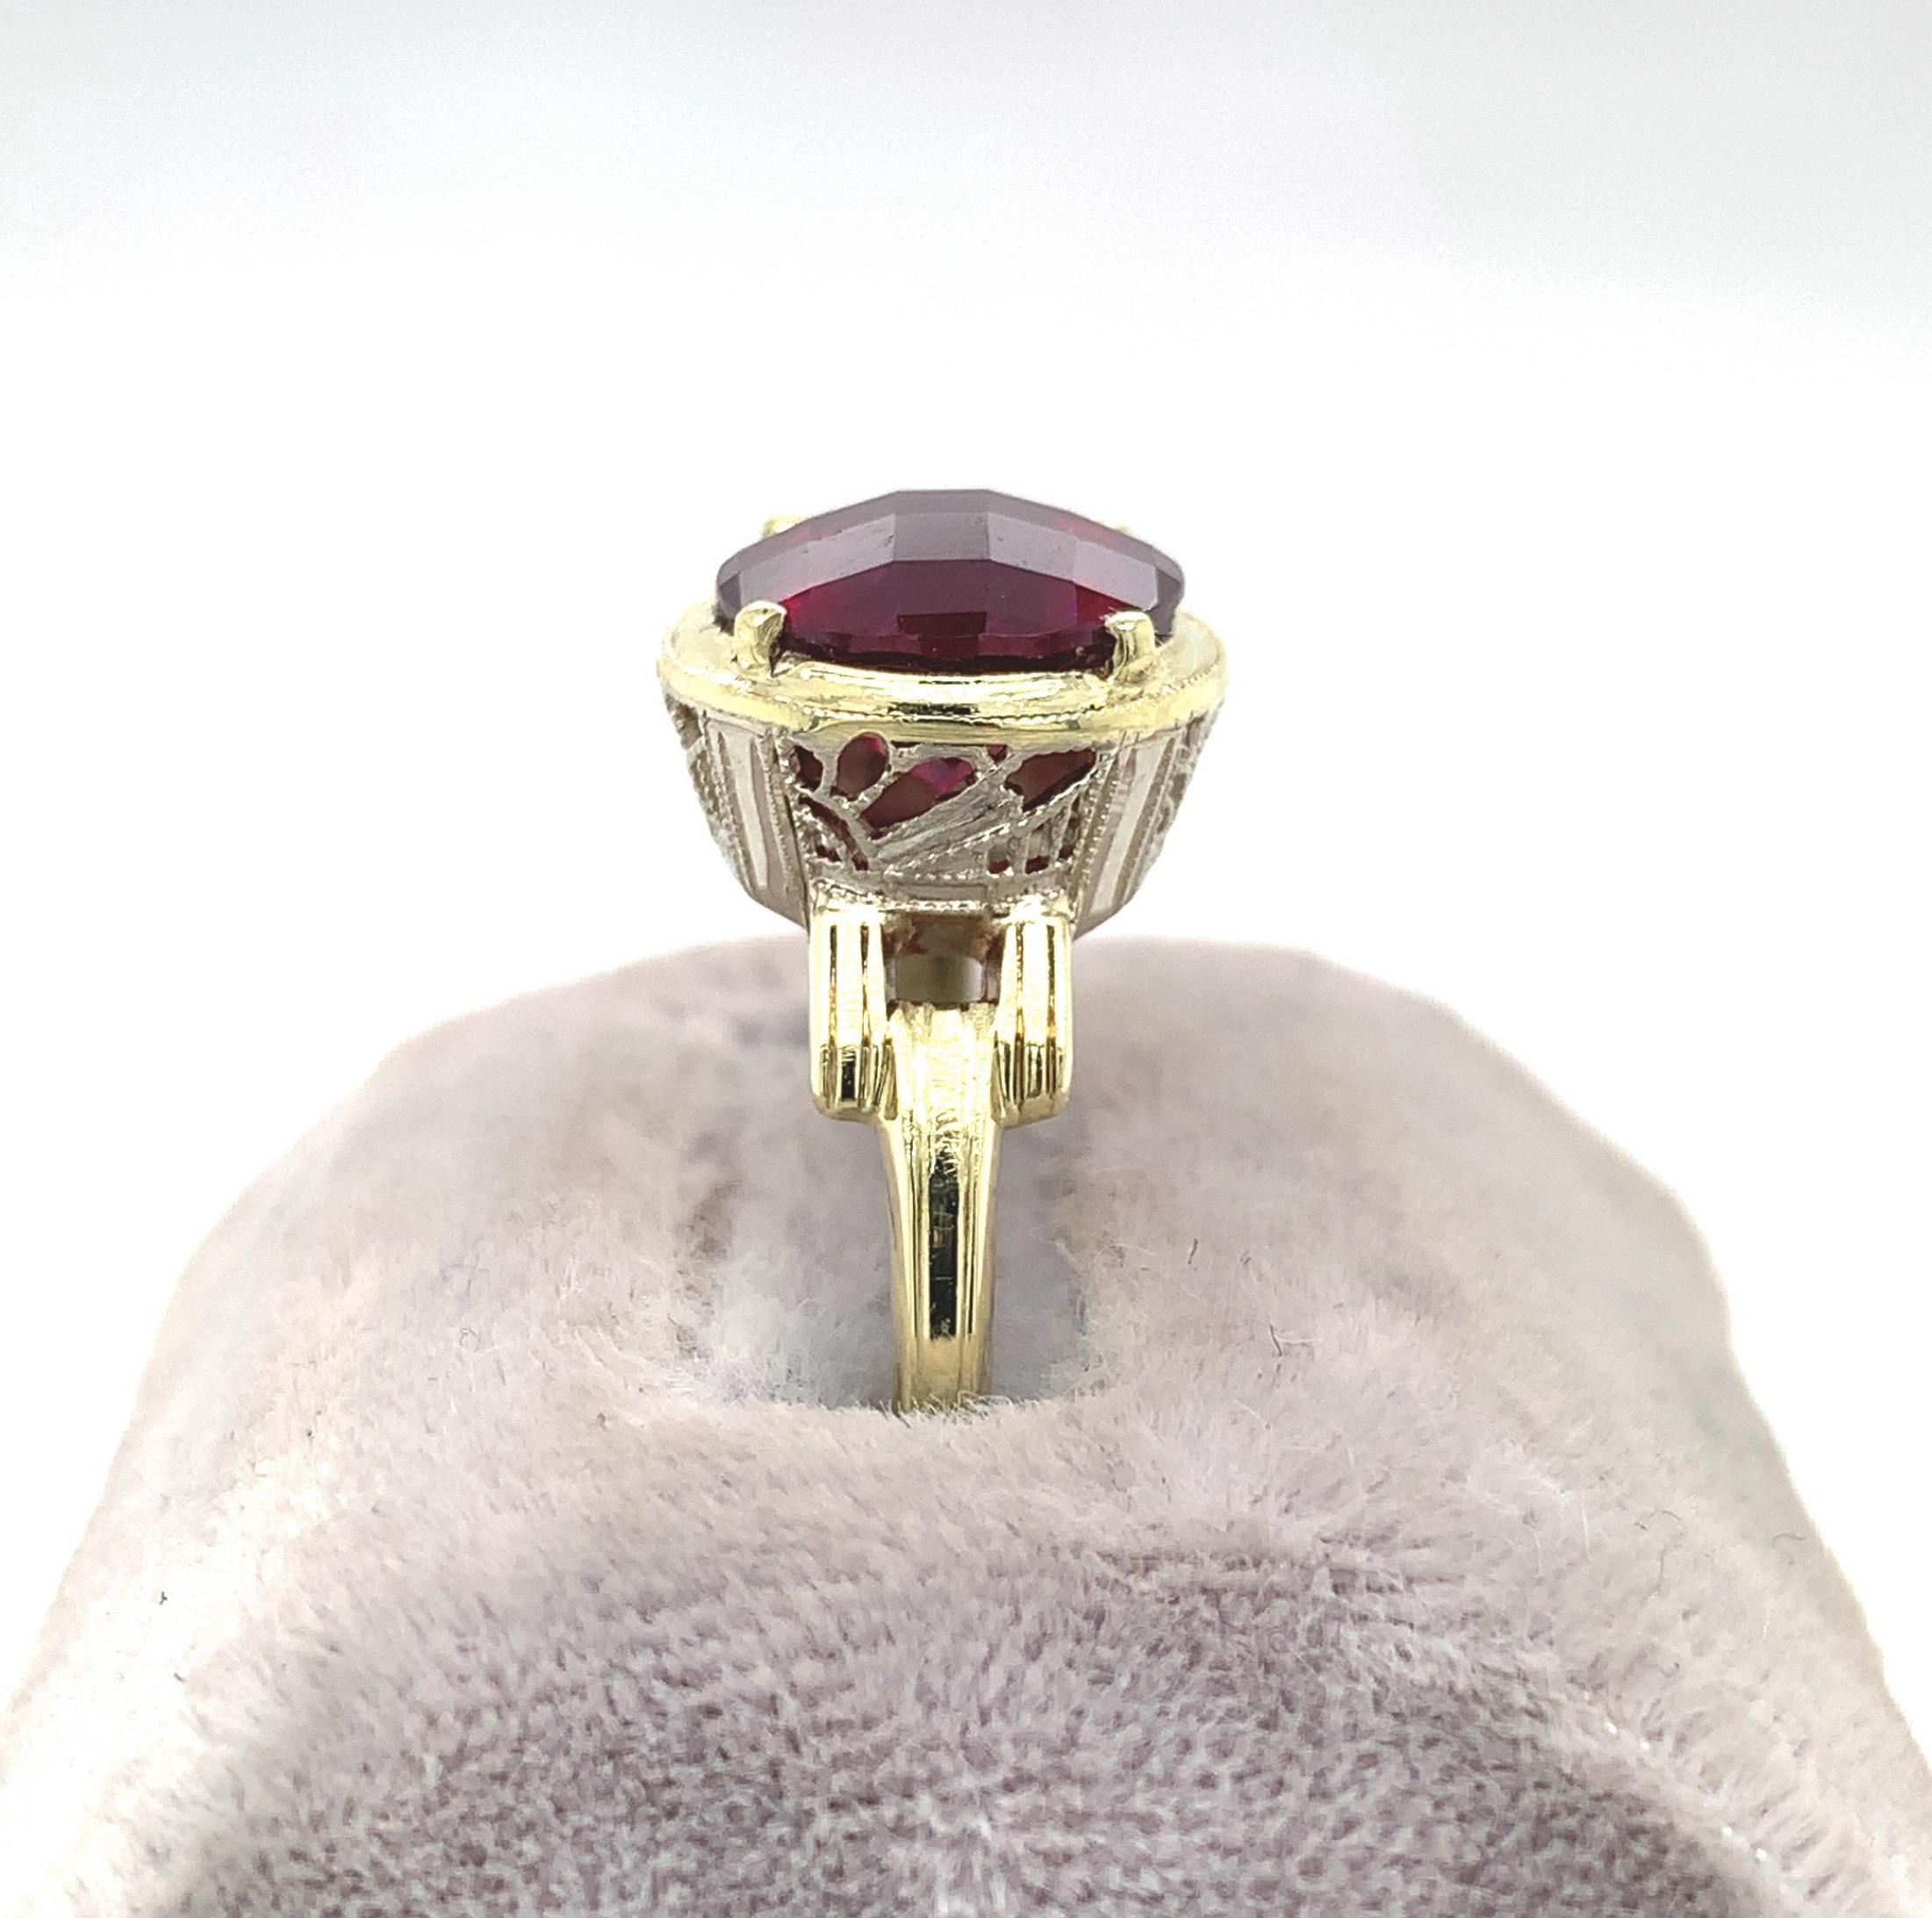 Ring aus 14 Karat Gelbgold mit filigranem Weißgold, besetzt mit einem großen runden Rhodolith-Granat. Der Granat wiegt 4 1/2 Karat und misst etwa 10 mm. Der Granat hat Himbeere dunkler rosa Farbe mit einer Spezialität Schachbrettmuster oben. Der